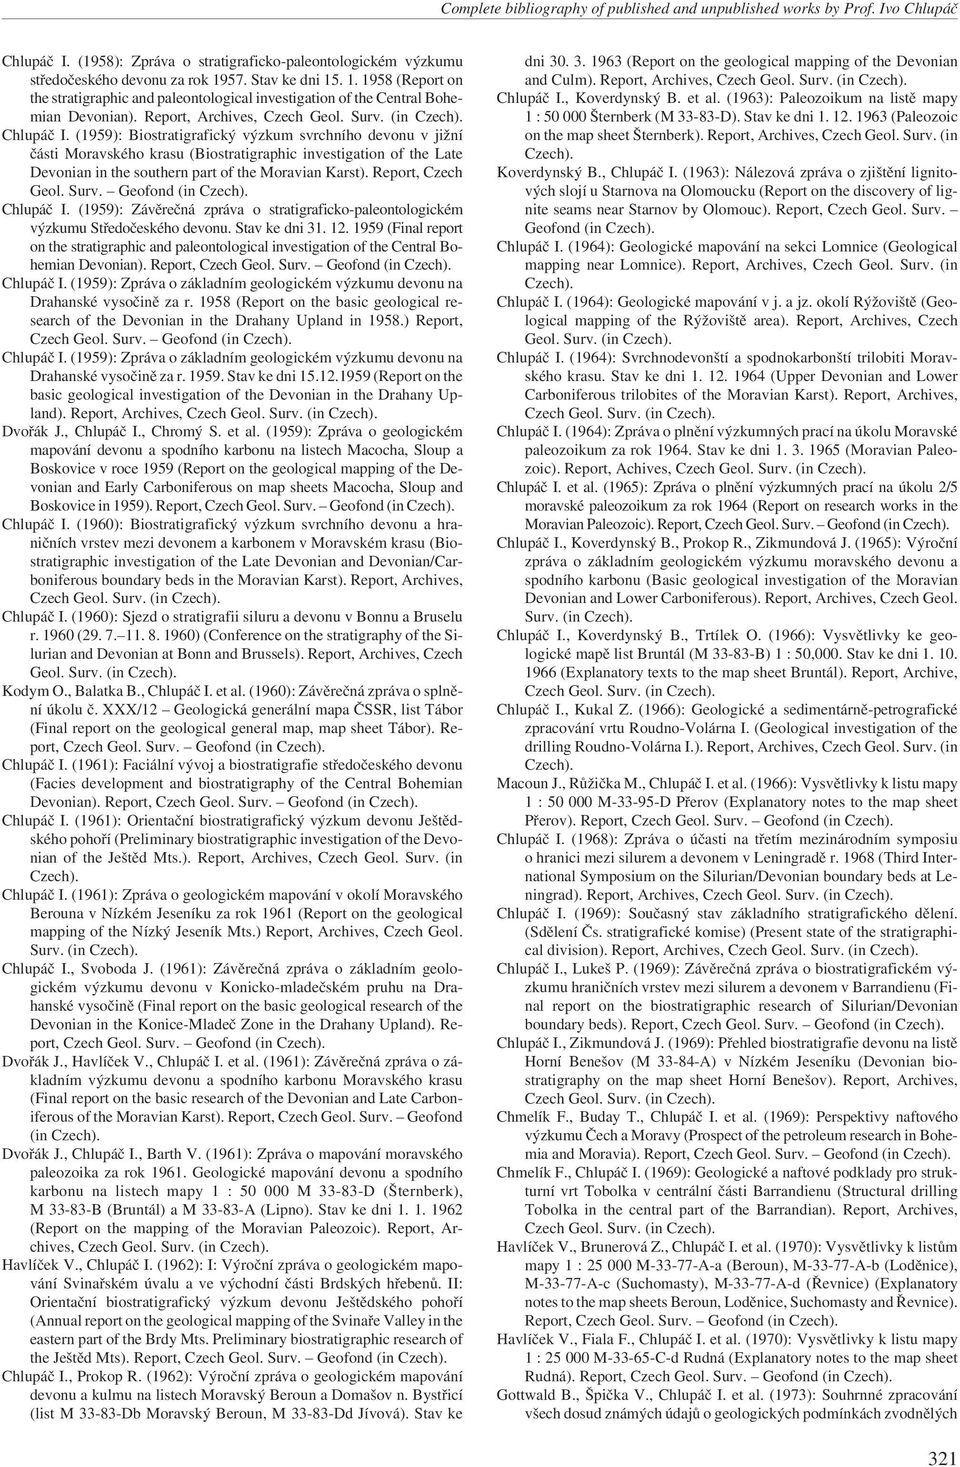 (1959): Biostratigrafický výzkum svrchního devonu v jižní části Moravského krasu (Biostratigraphic investigation of the Late Devonian in the southern part of the Moravian Karst). Report, Czech Geol.